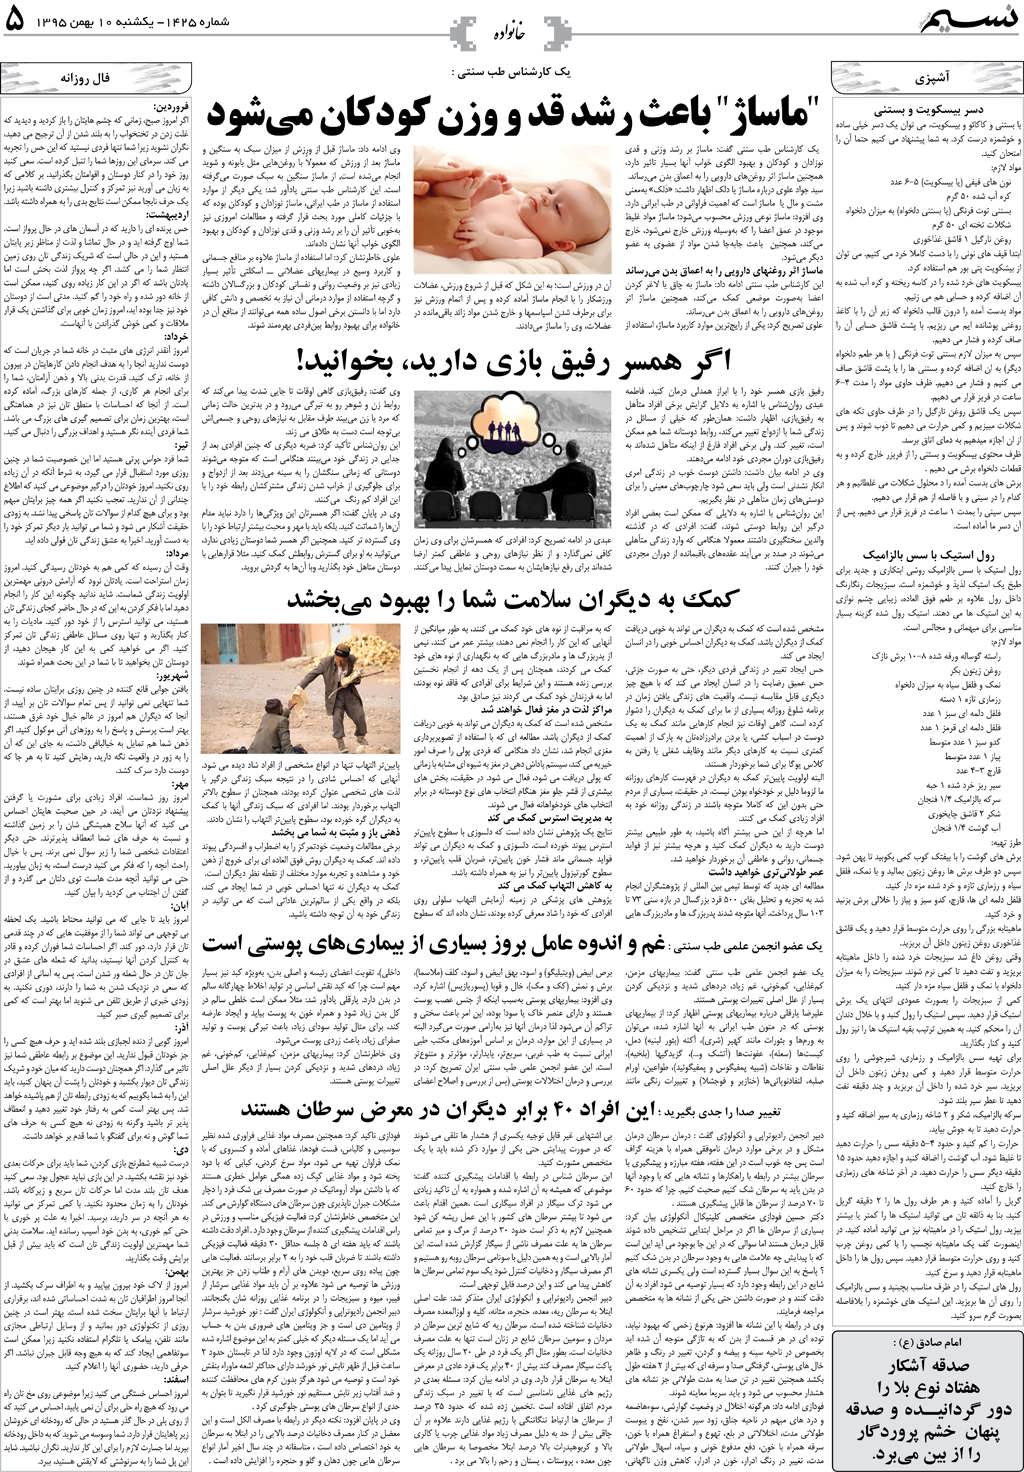 صفحه خانواده روزنامه نسیم شماره 1425